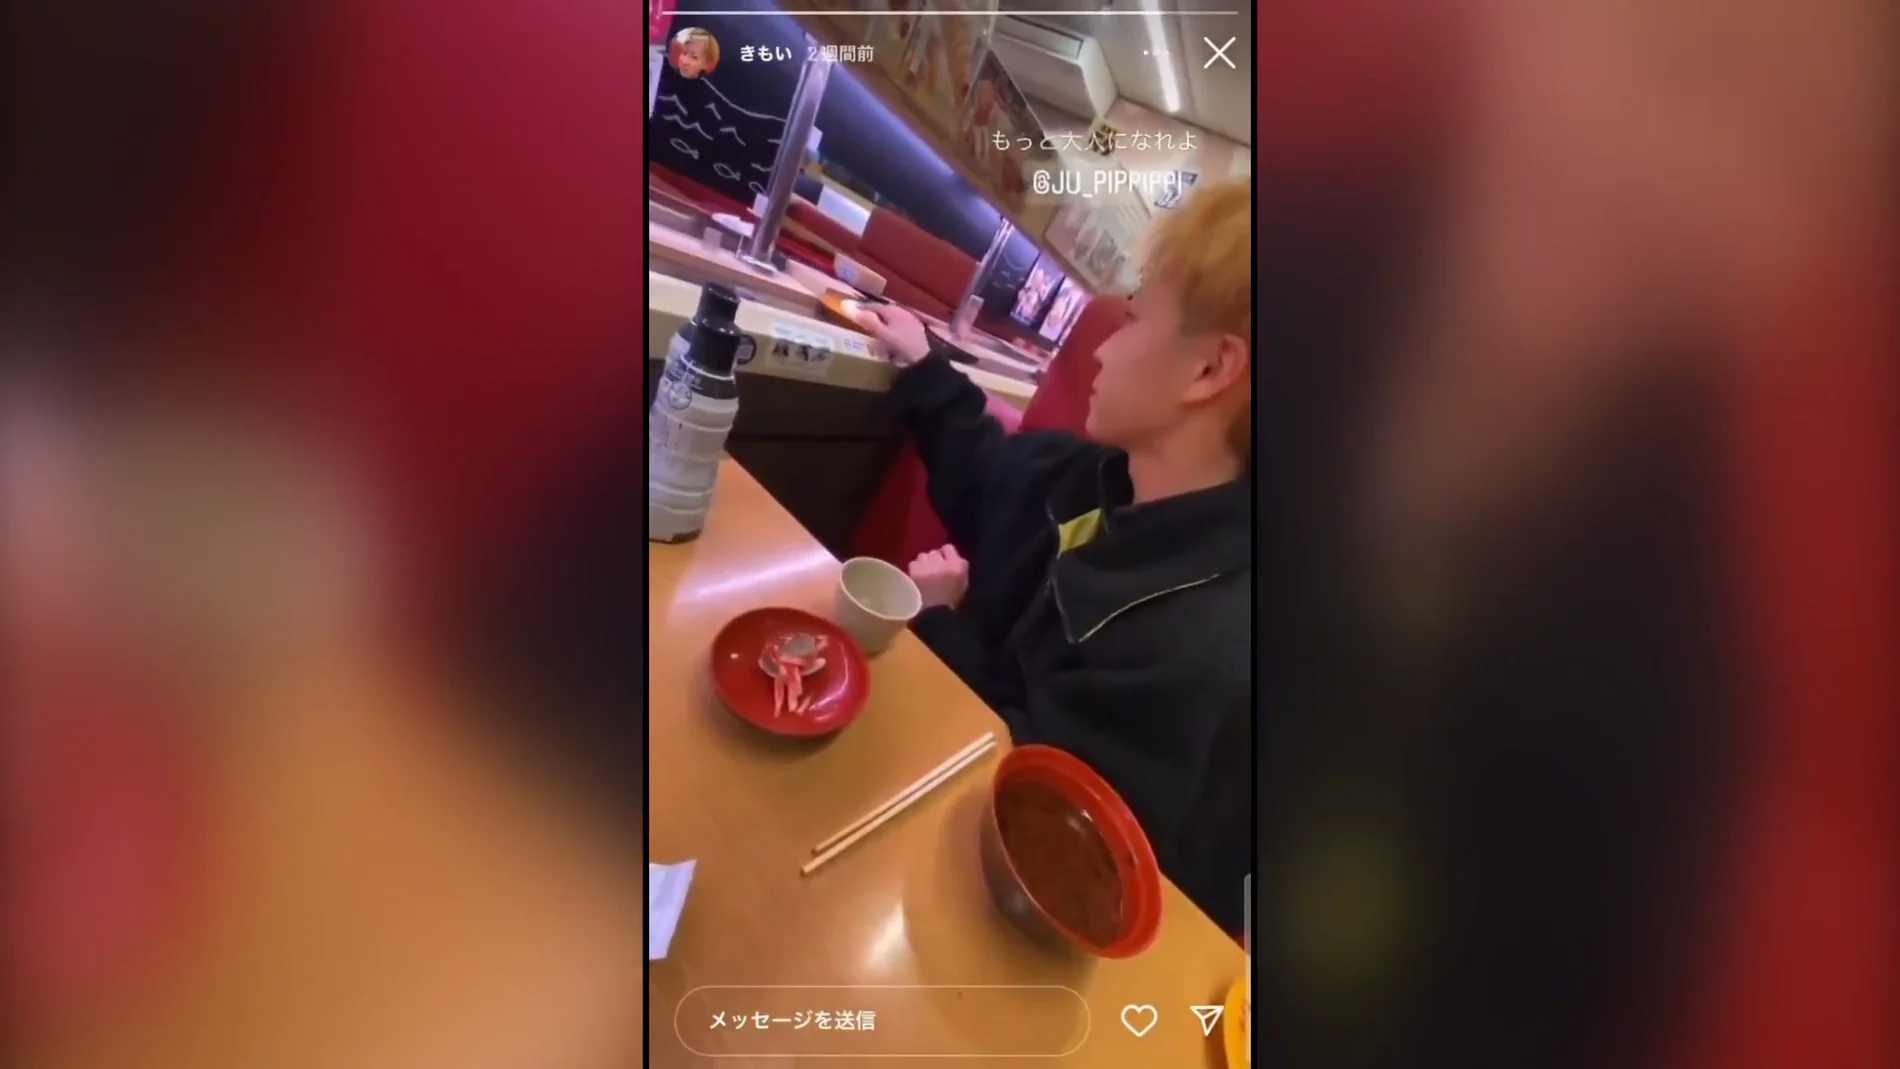 Vídeo viral difundiendo bromas antihigiénicas en restaurantes japoneses